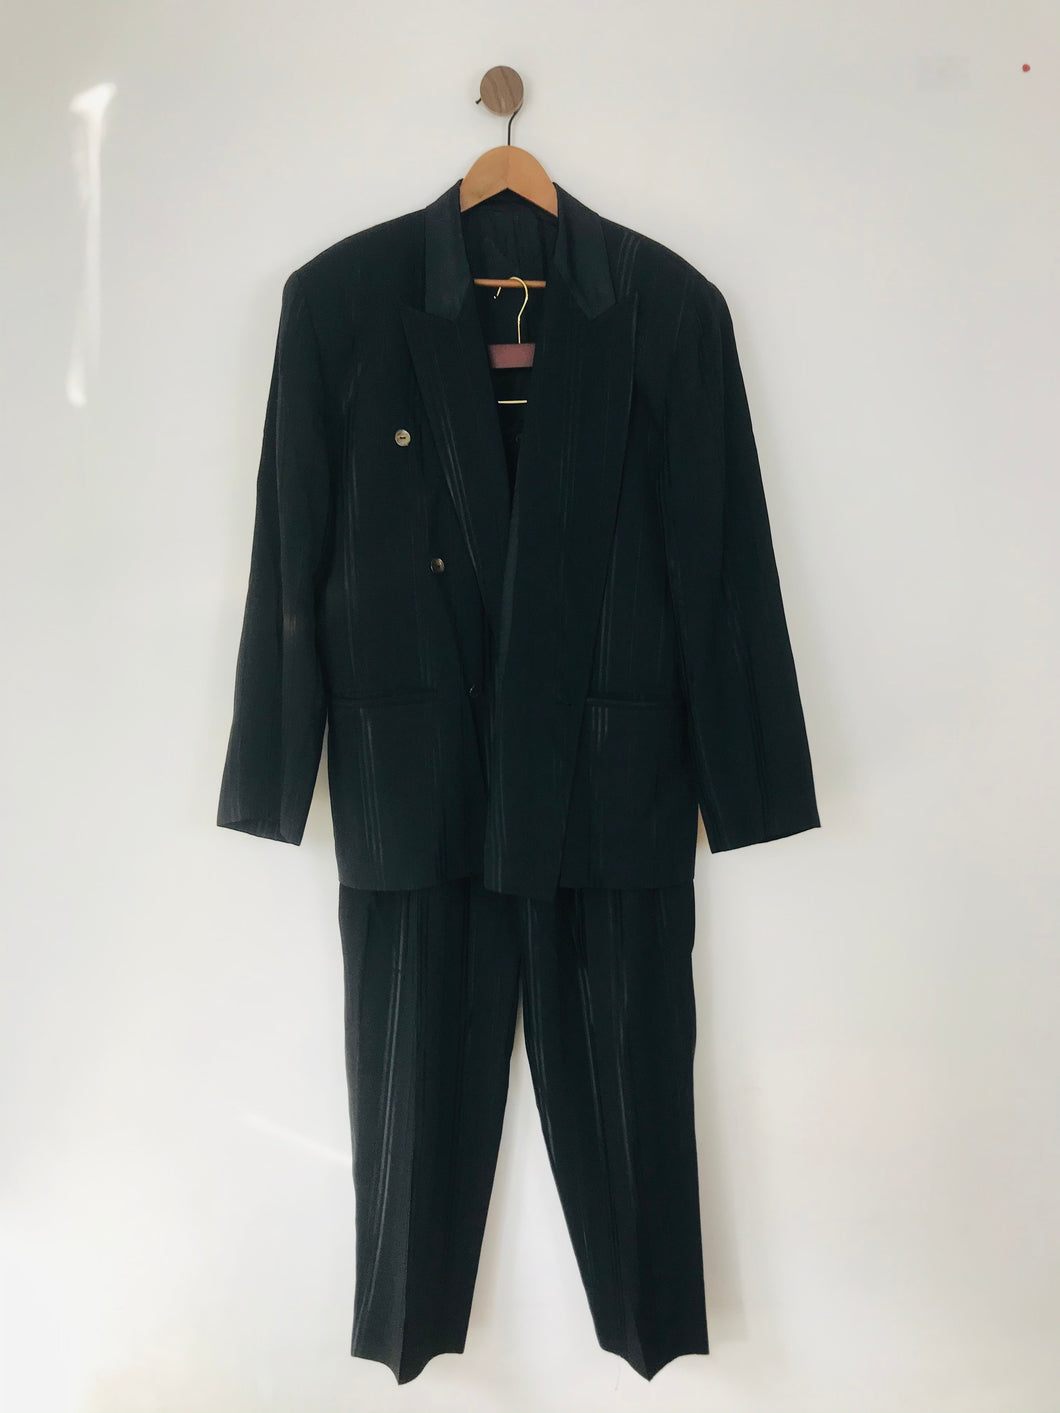 Adolfo Dominguez Men’s 2 Piece Striped Dinner Suit | Jacket EU52 UK42, Trousers UK40 | Black